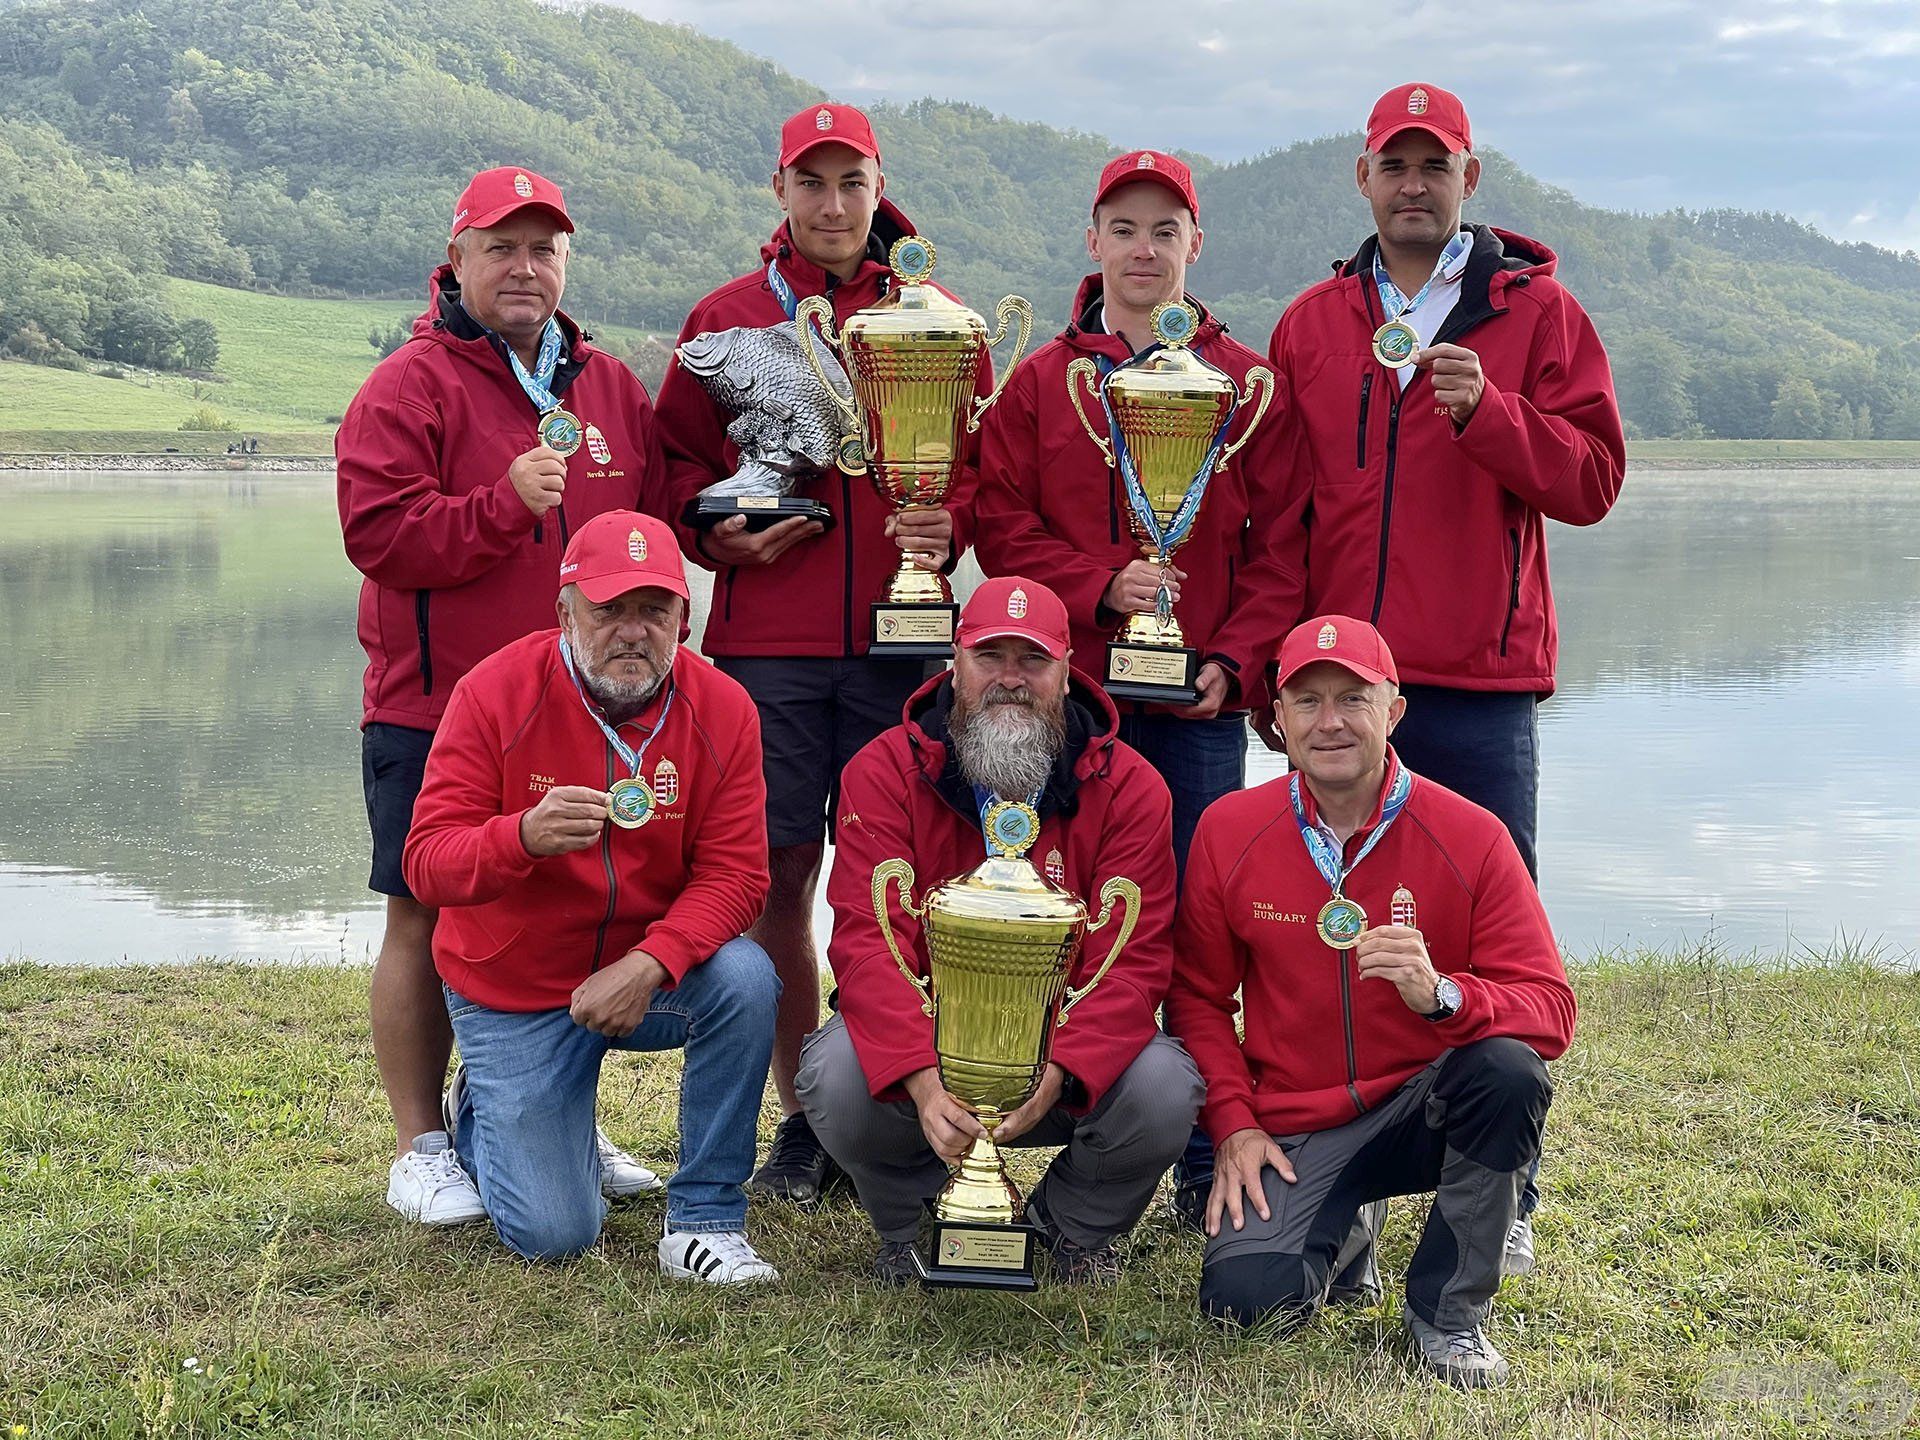 A magyar horgászok a világ legeredményesebb method feeder horgászai! Az I. Method Feeder Világbajnokságot 2021-ben hazánk csapata nyerte Magyarországon…